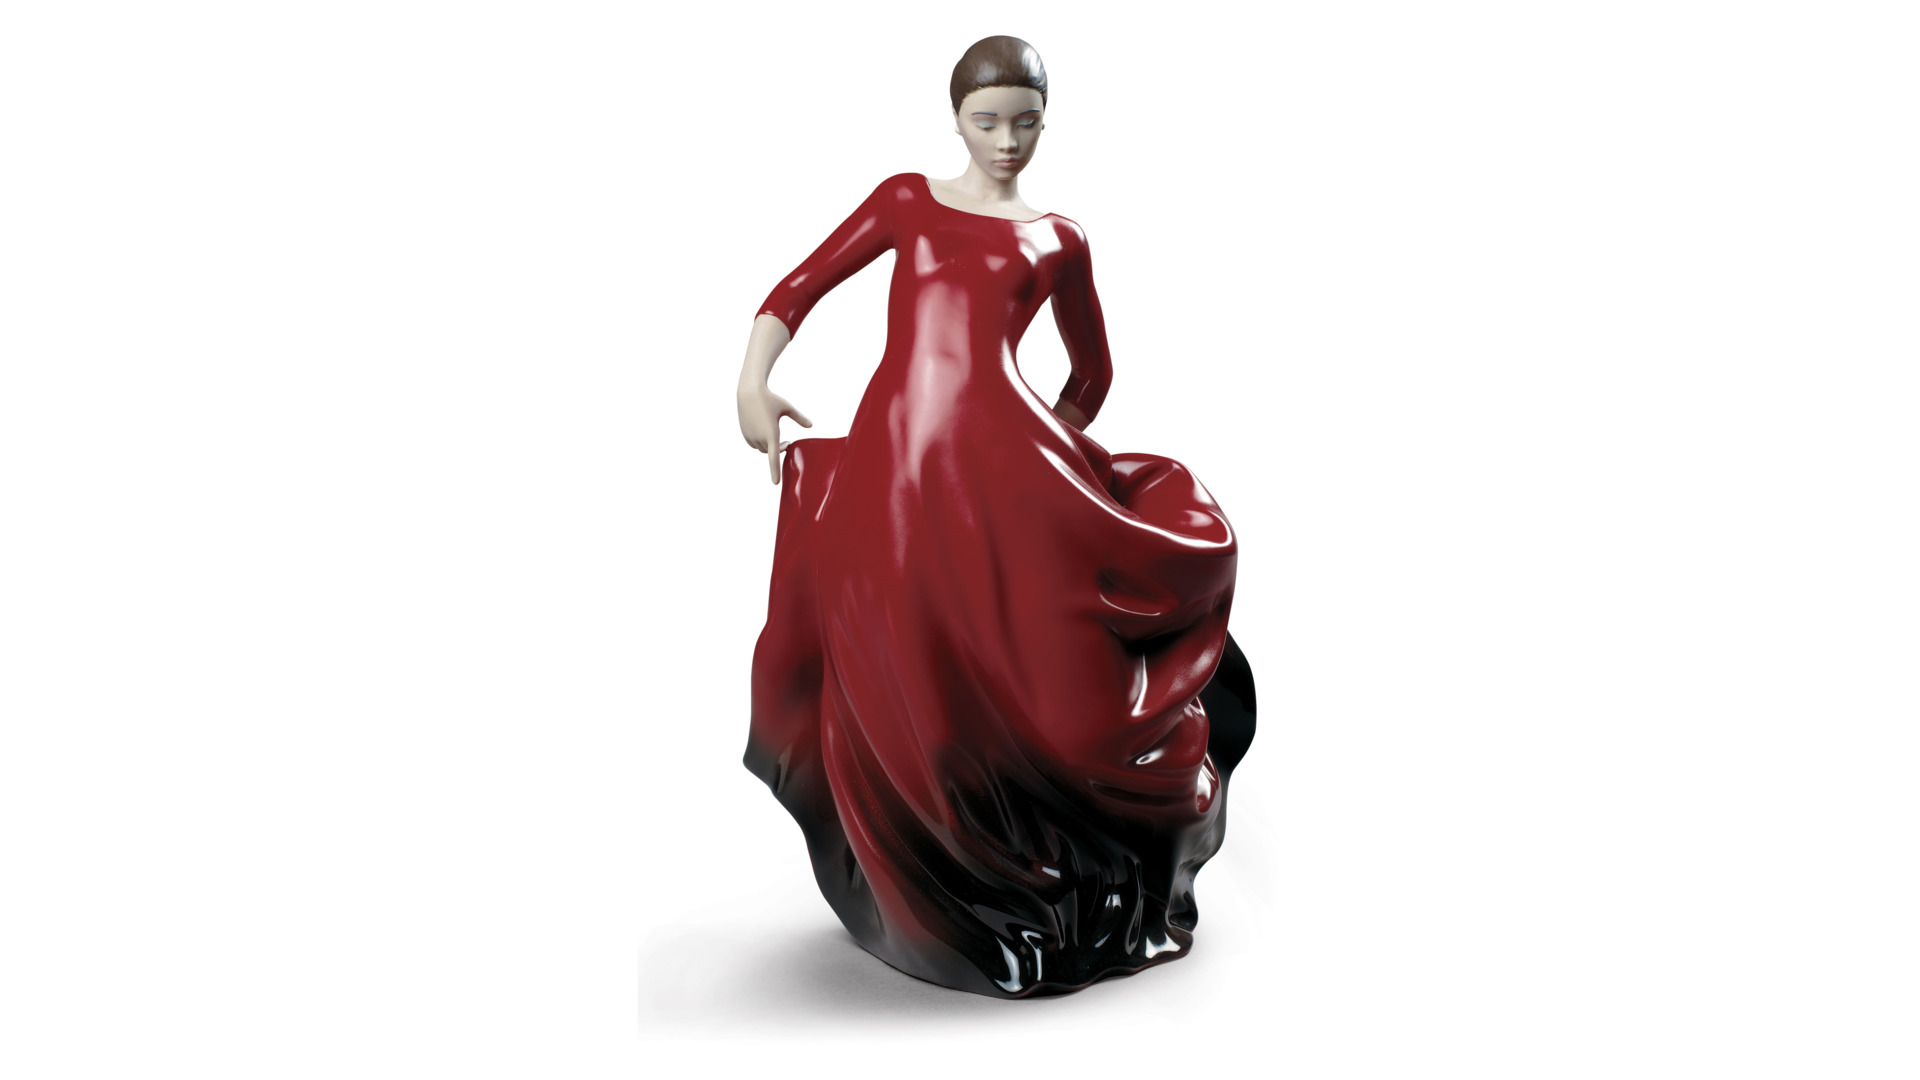 Фигурка Lladro Танцовщица в красном 21х33 см, фарфор